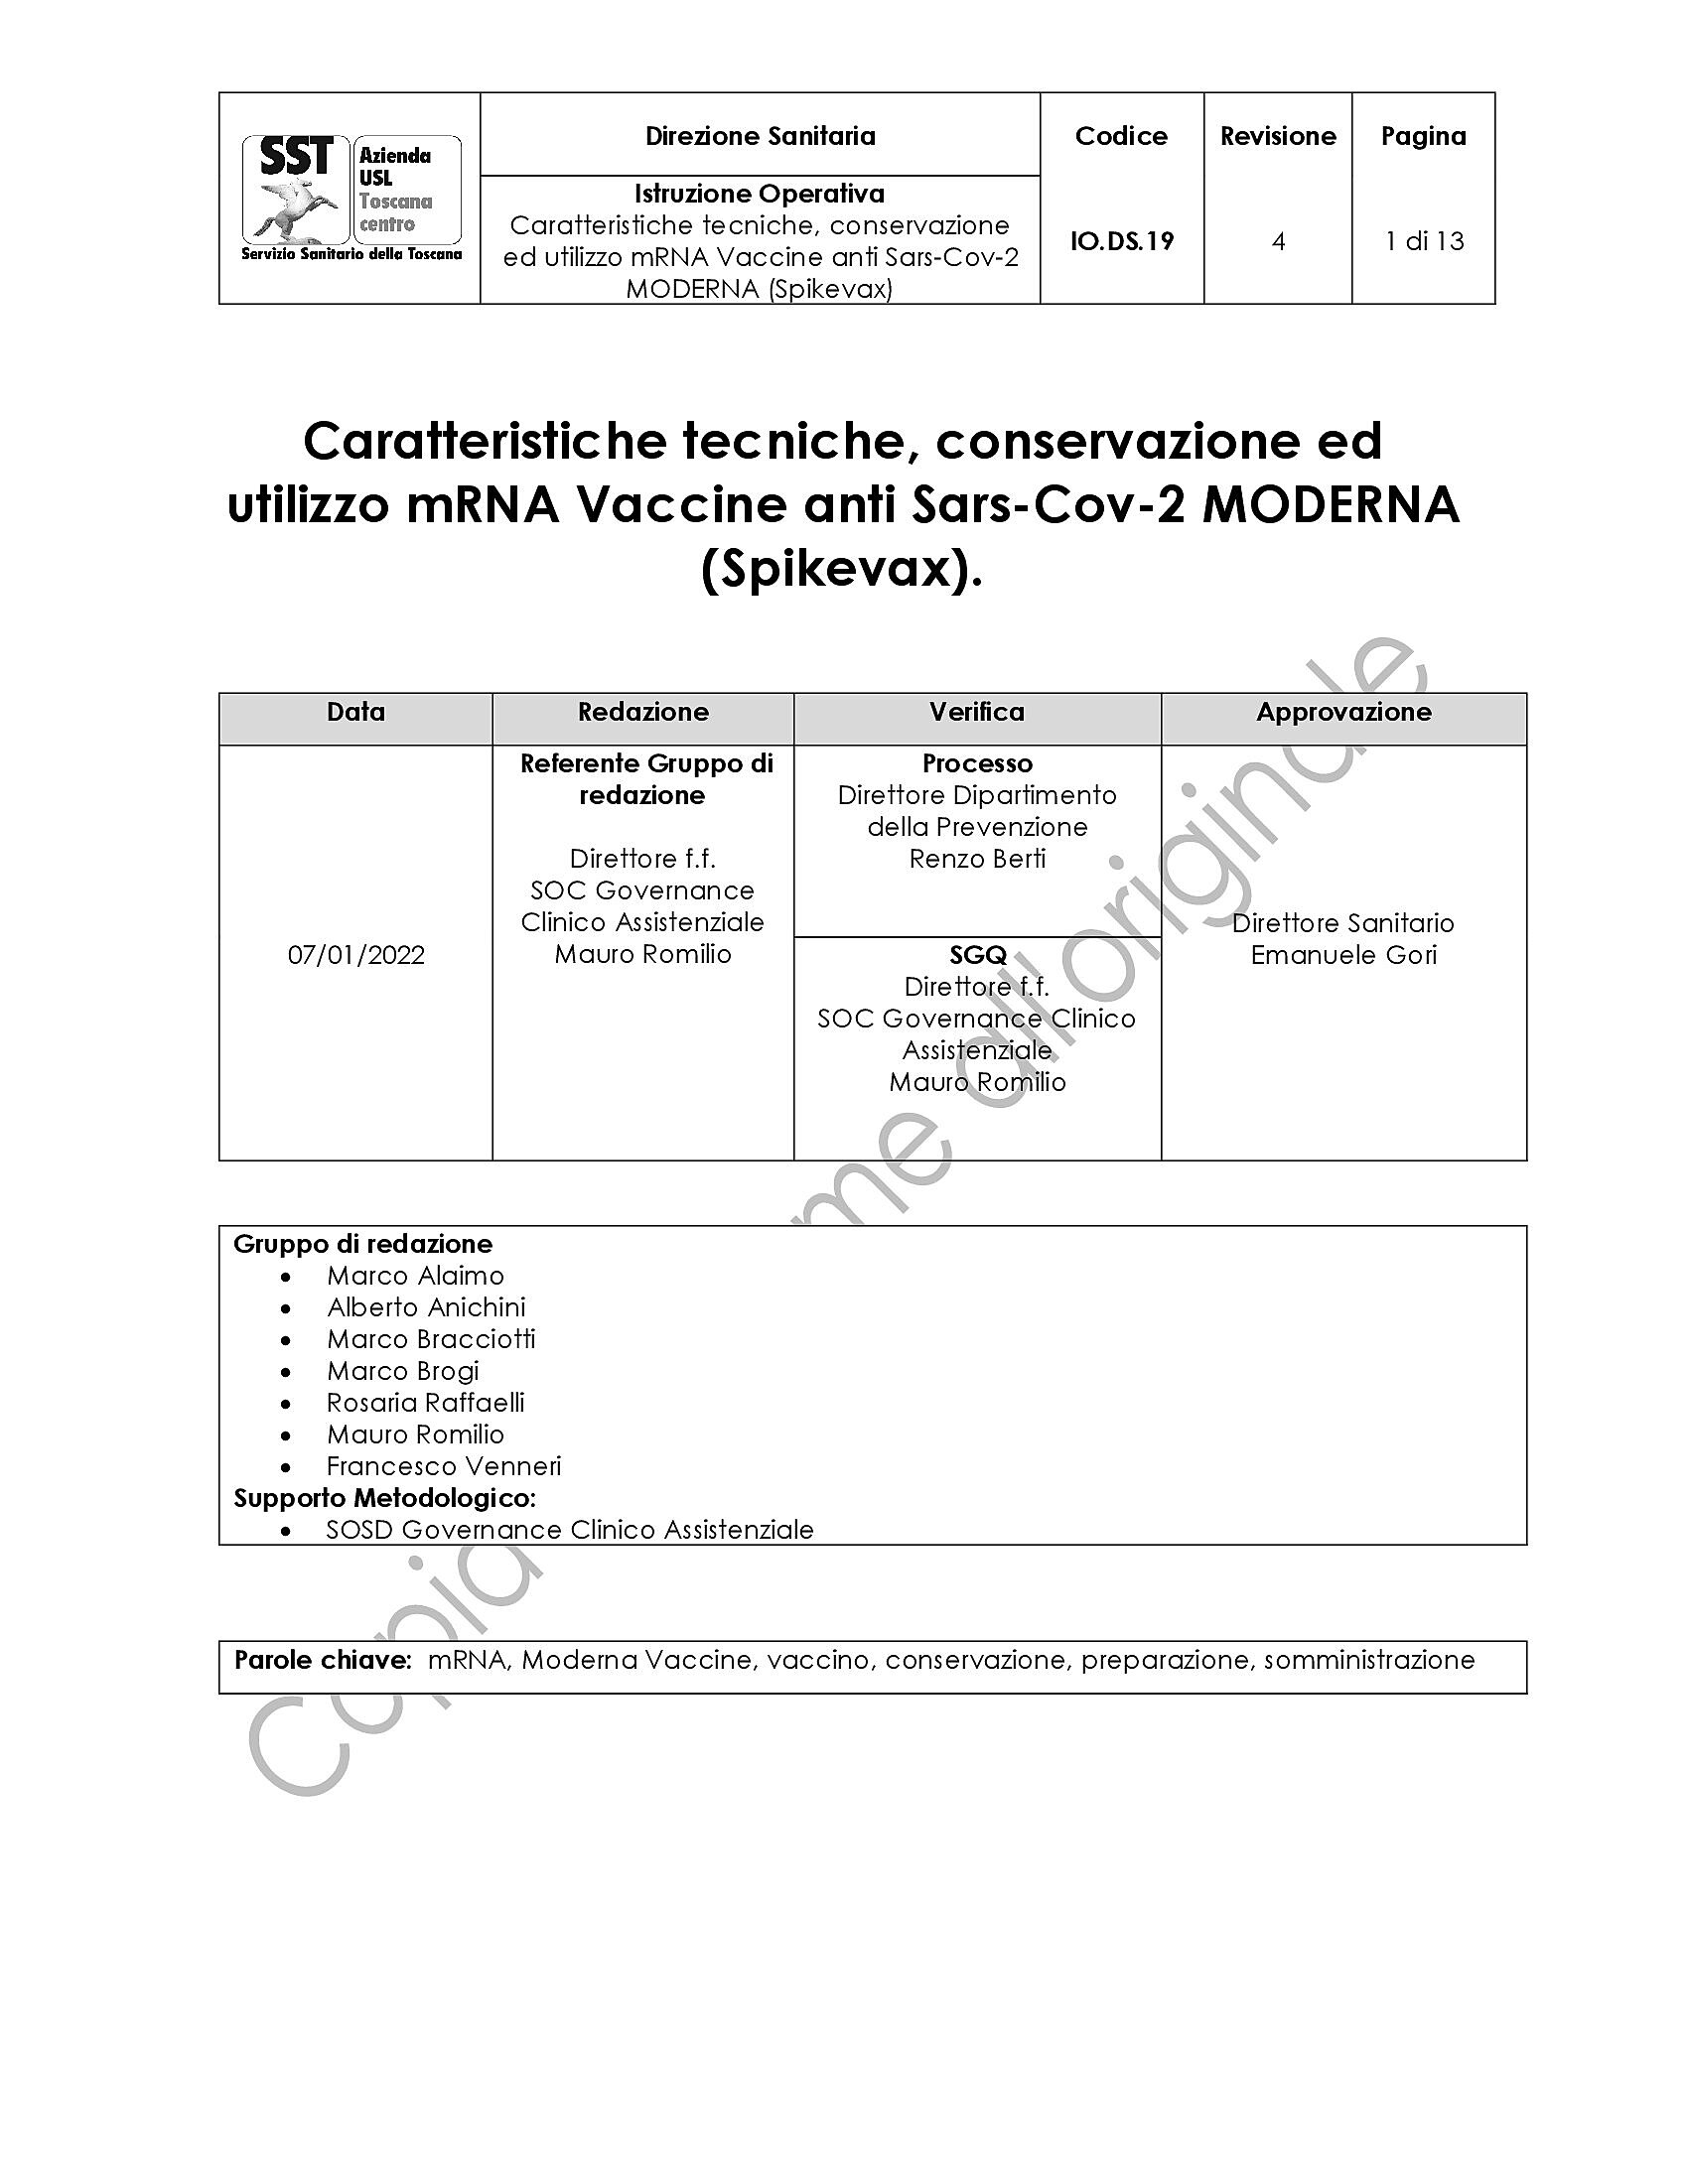 IO.DS.19 rev.4 Caratteristiche tecniche, conservazione ed utilizzo mRNA Vaccine anti Sars-Cov-2 MODERNA (Spikevax)